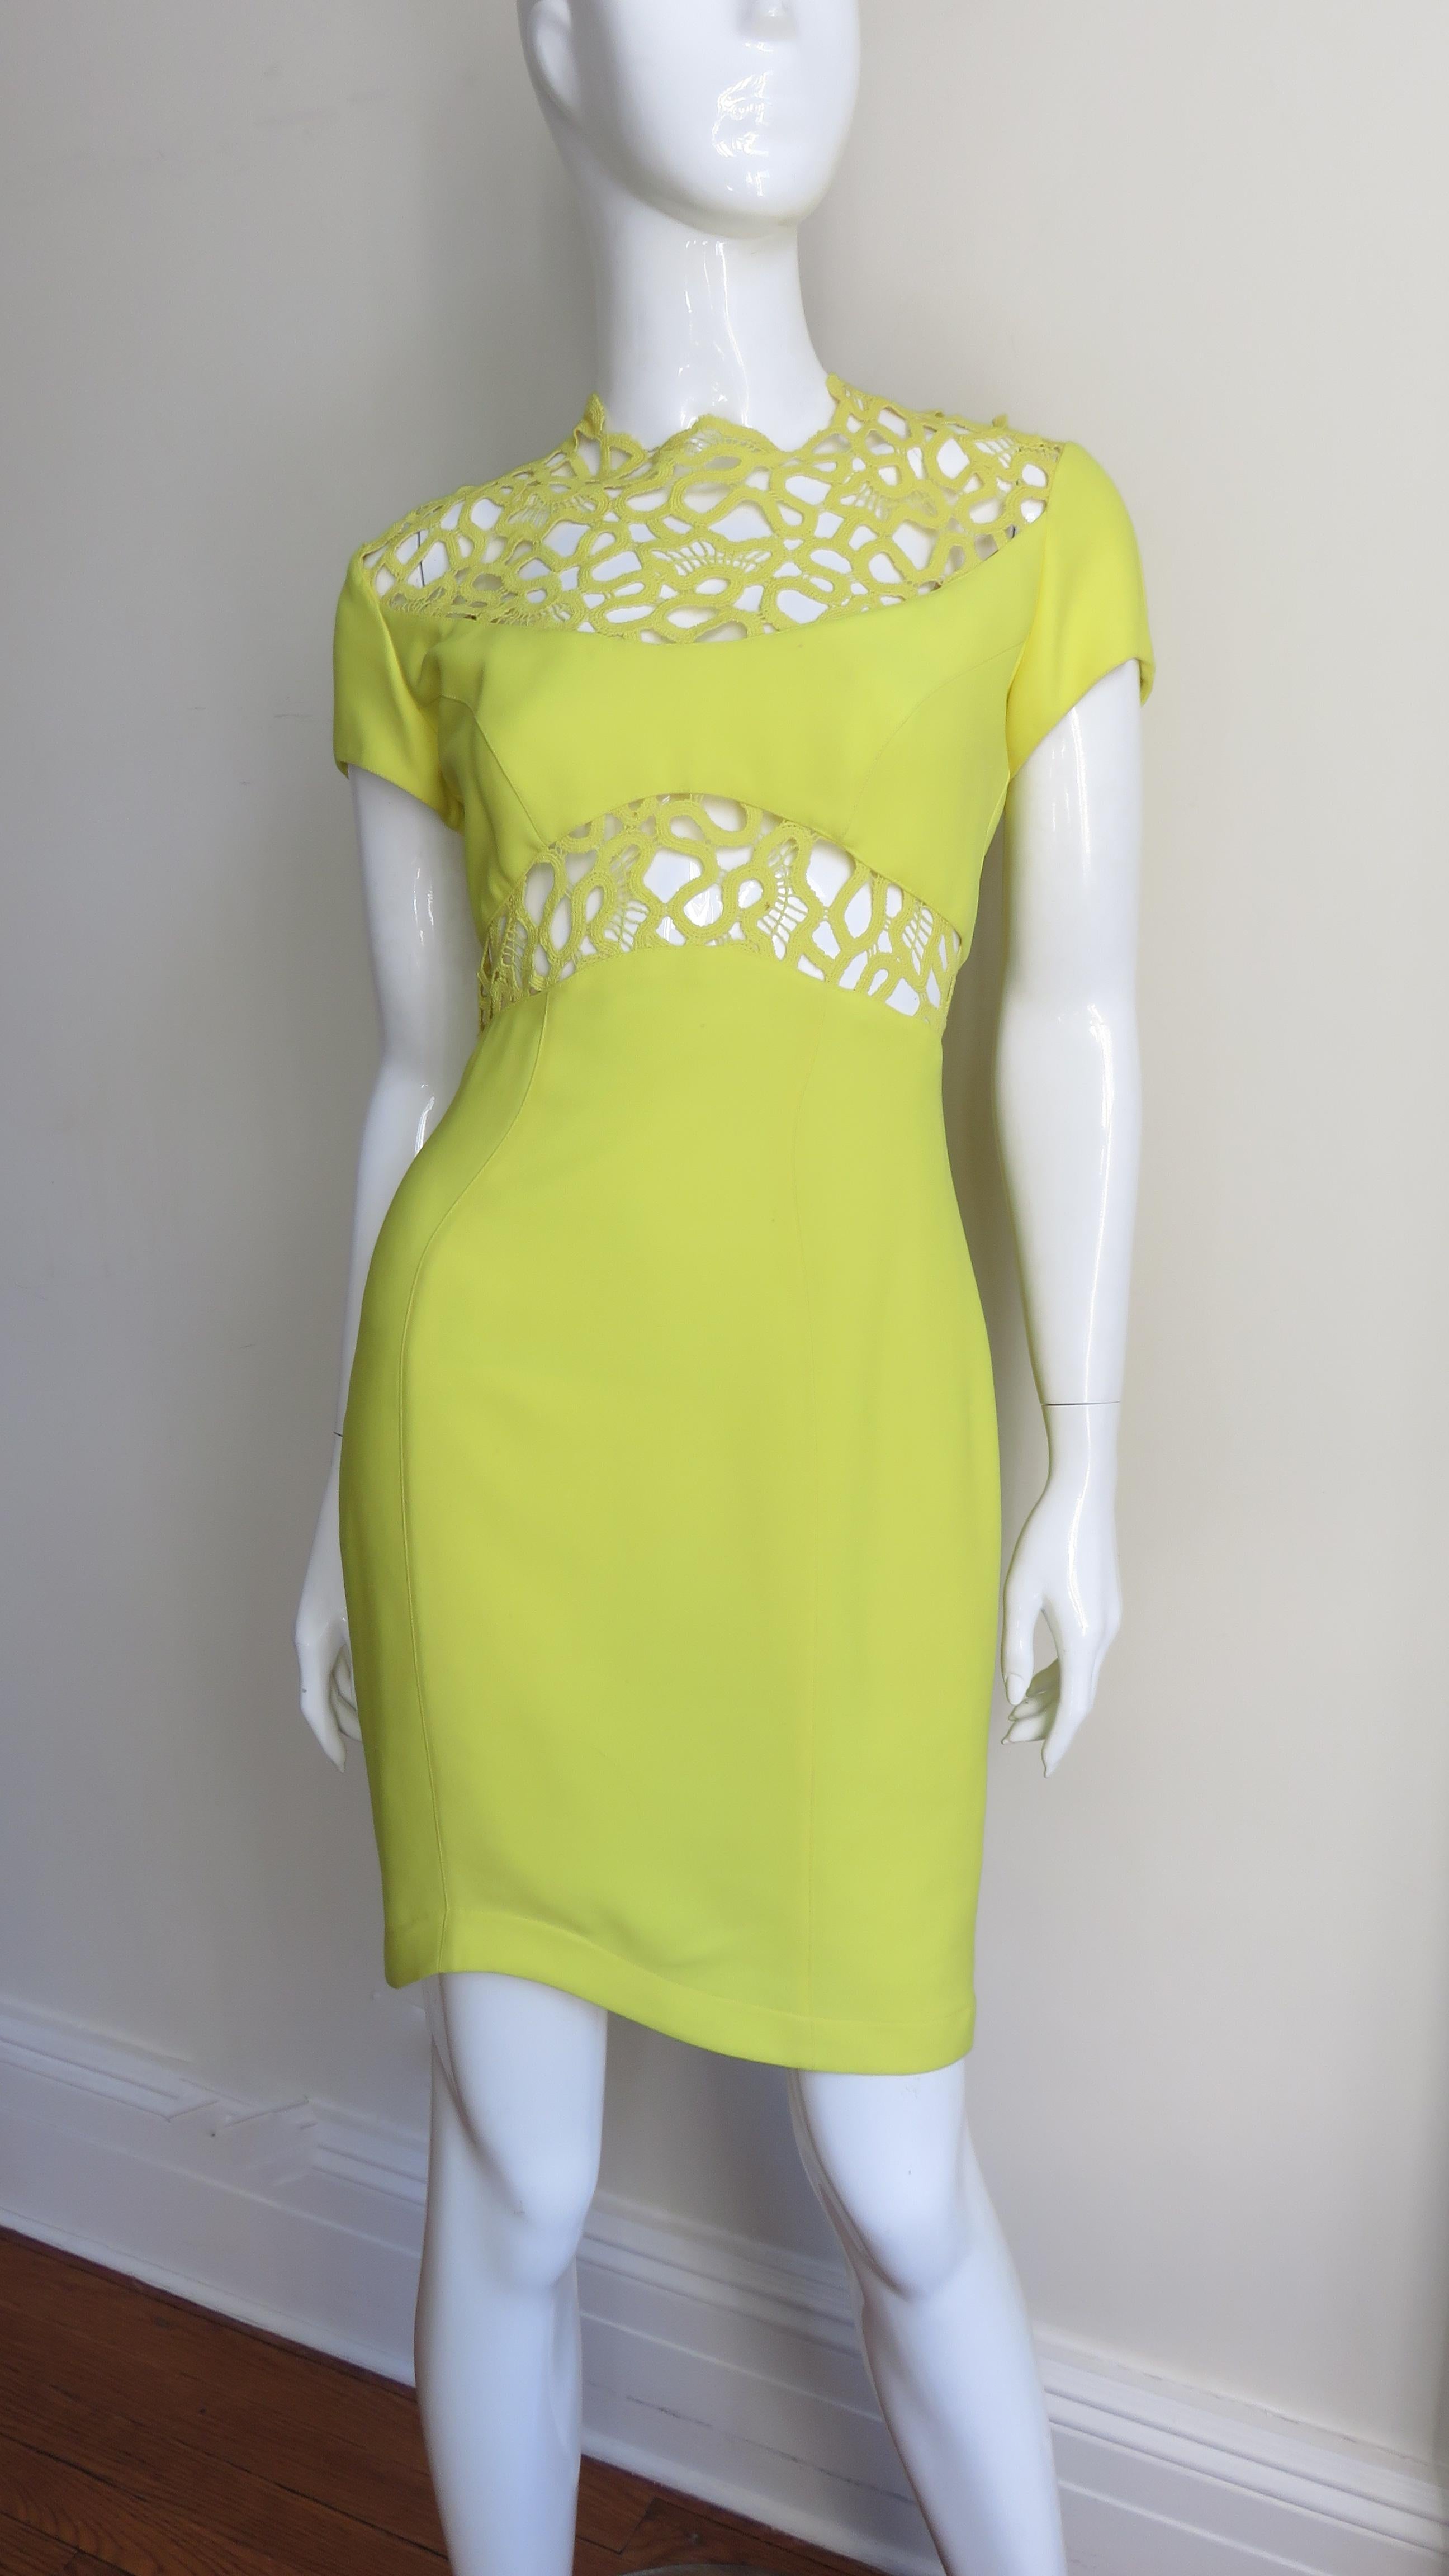 Ein atemberaubendes, leuchtend gelbgrünes Bodycon-Kleid aus Seide von Thierry Mugler.  Es hat kurze Ärmel und ist bis zum asymmetrischen Saum halb tailliert.  Die obere Brust, der obere Rücken und die Taille sind mit einem passenden, luftigen